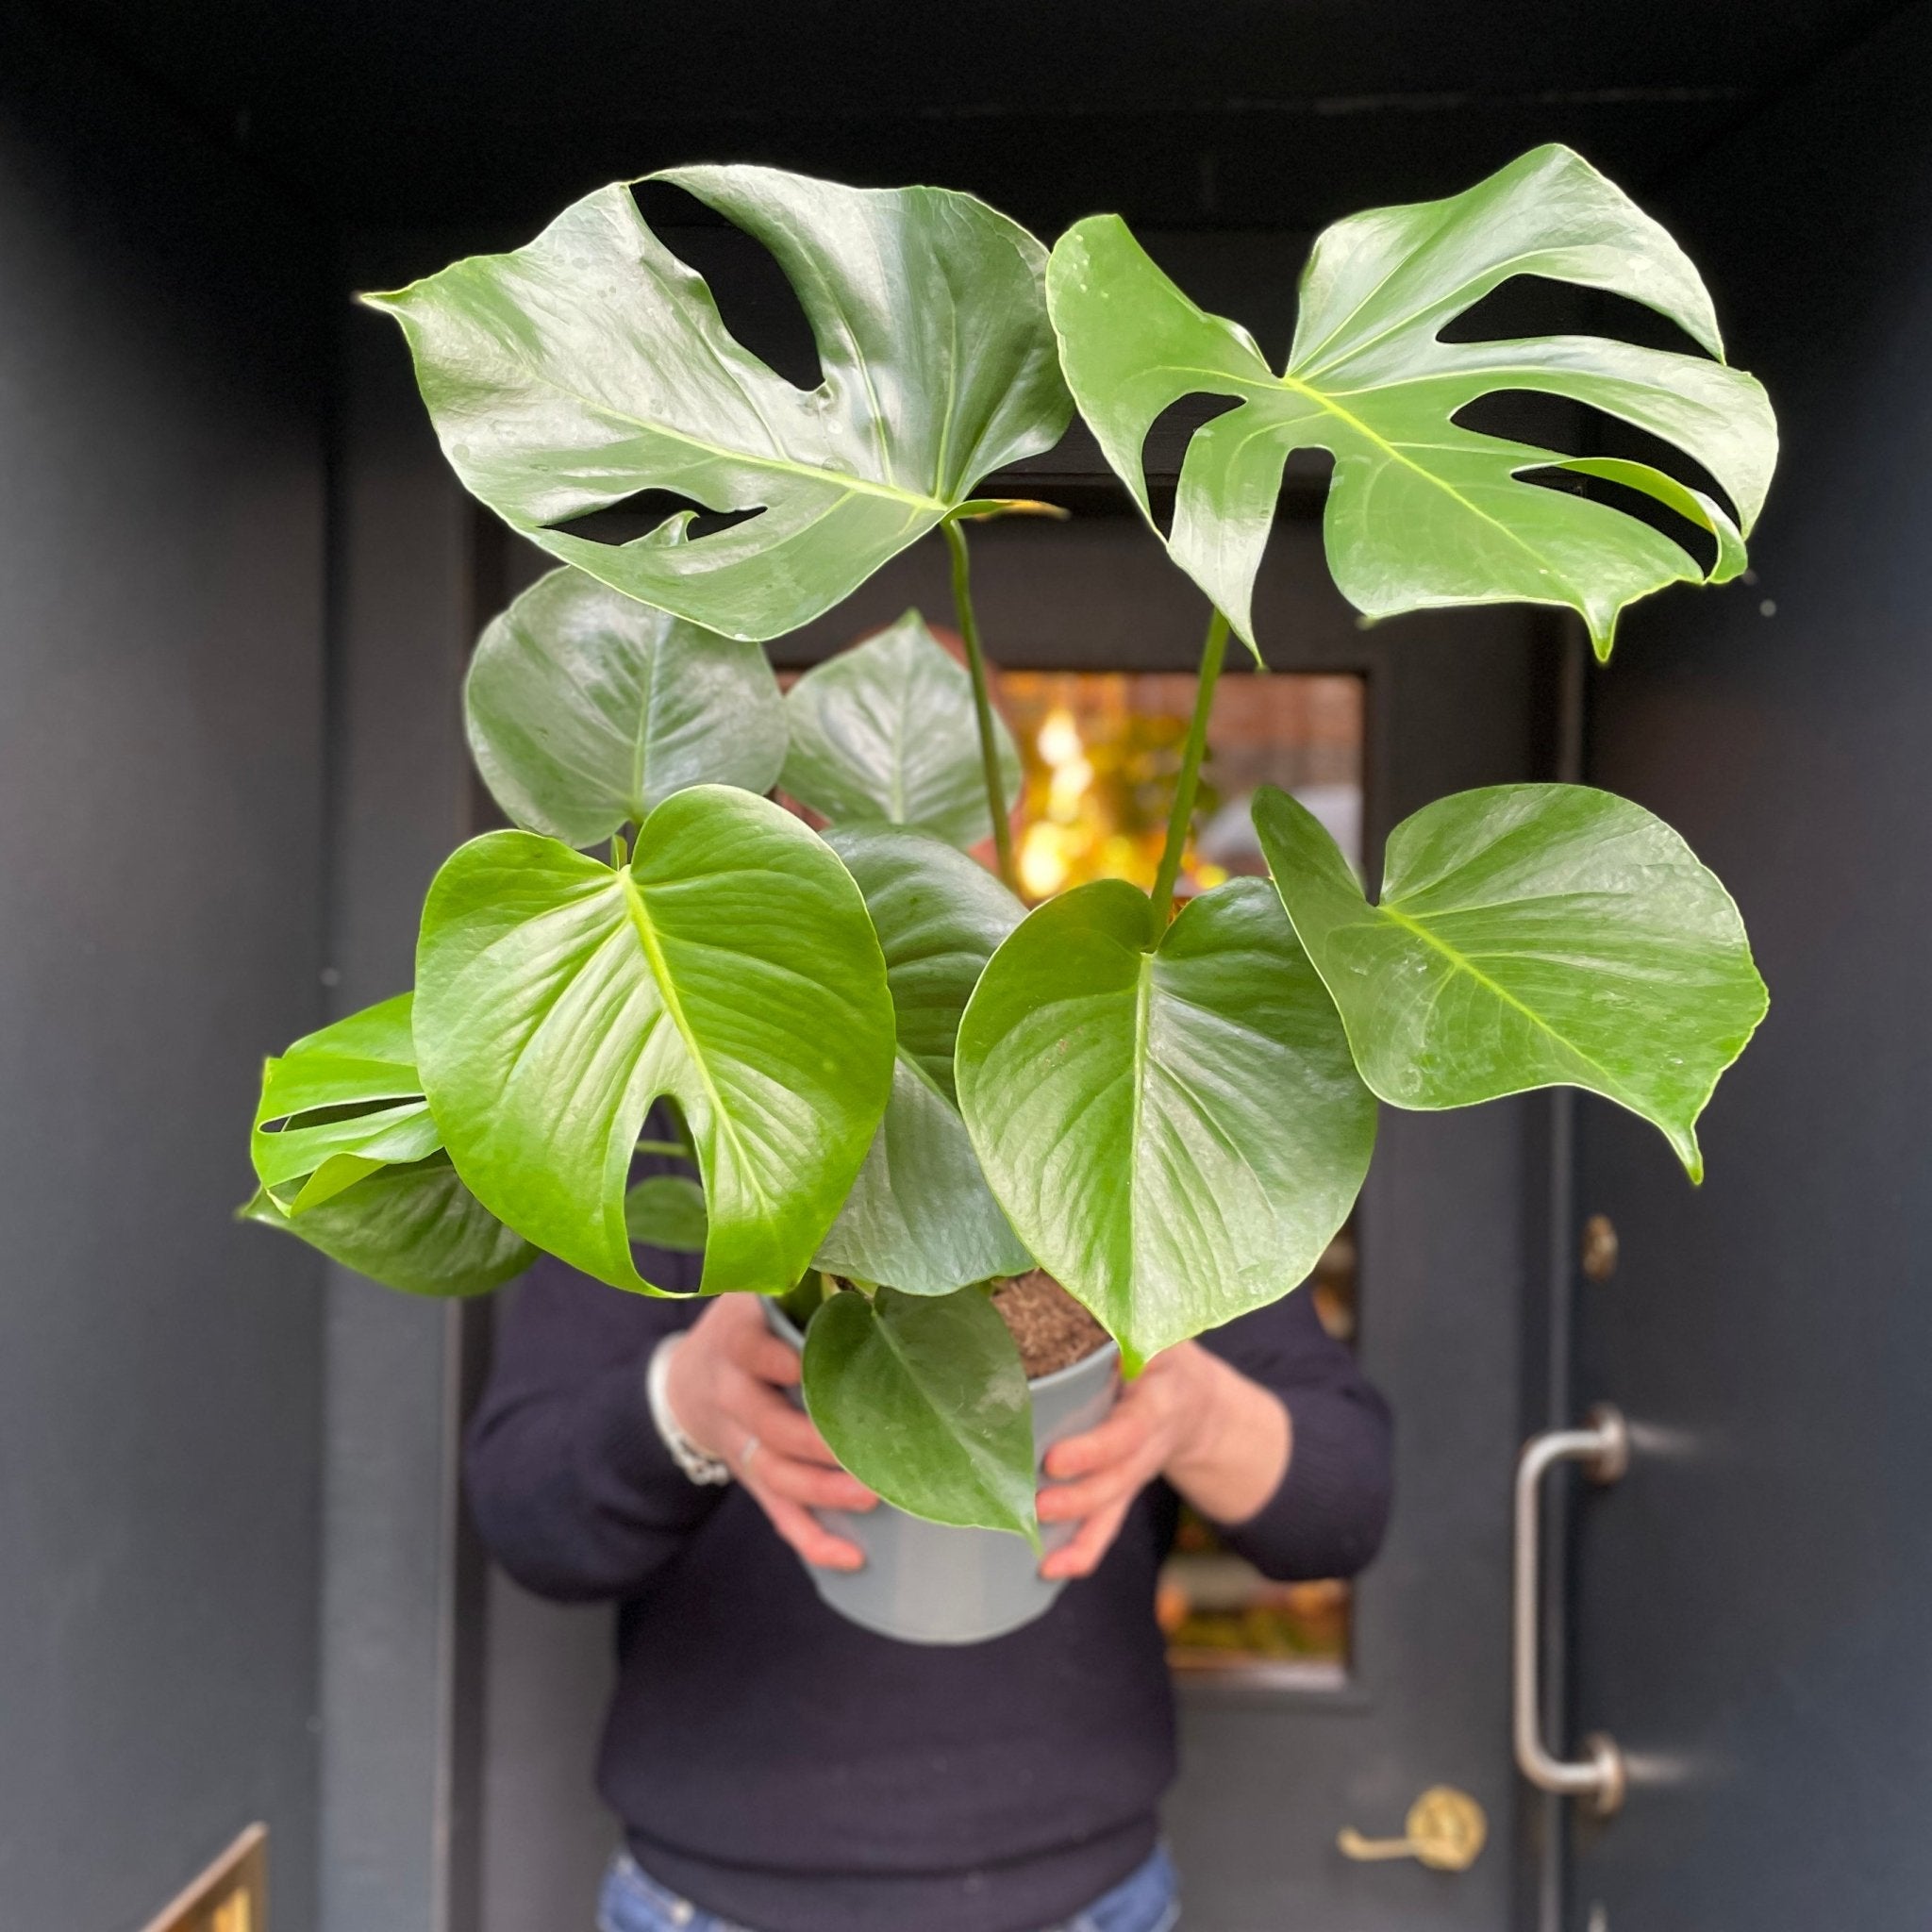 Monstera deliciosa (21cm pot) - grow urban. UK